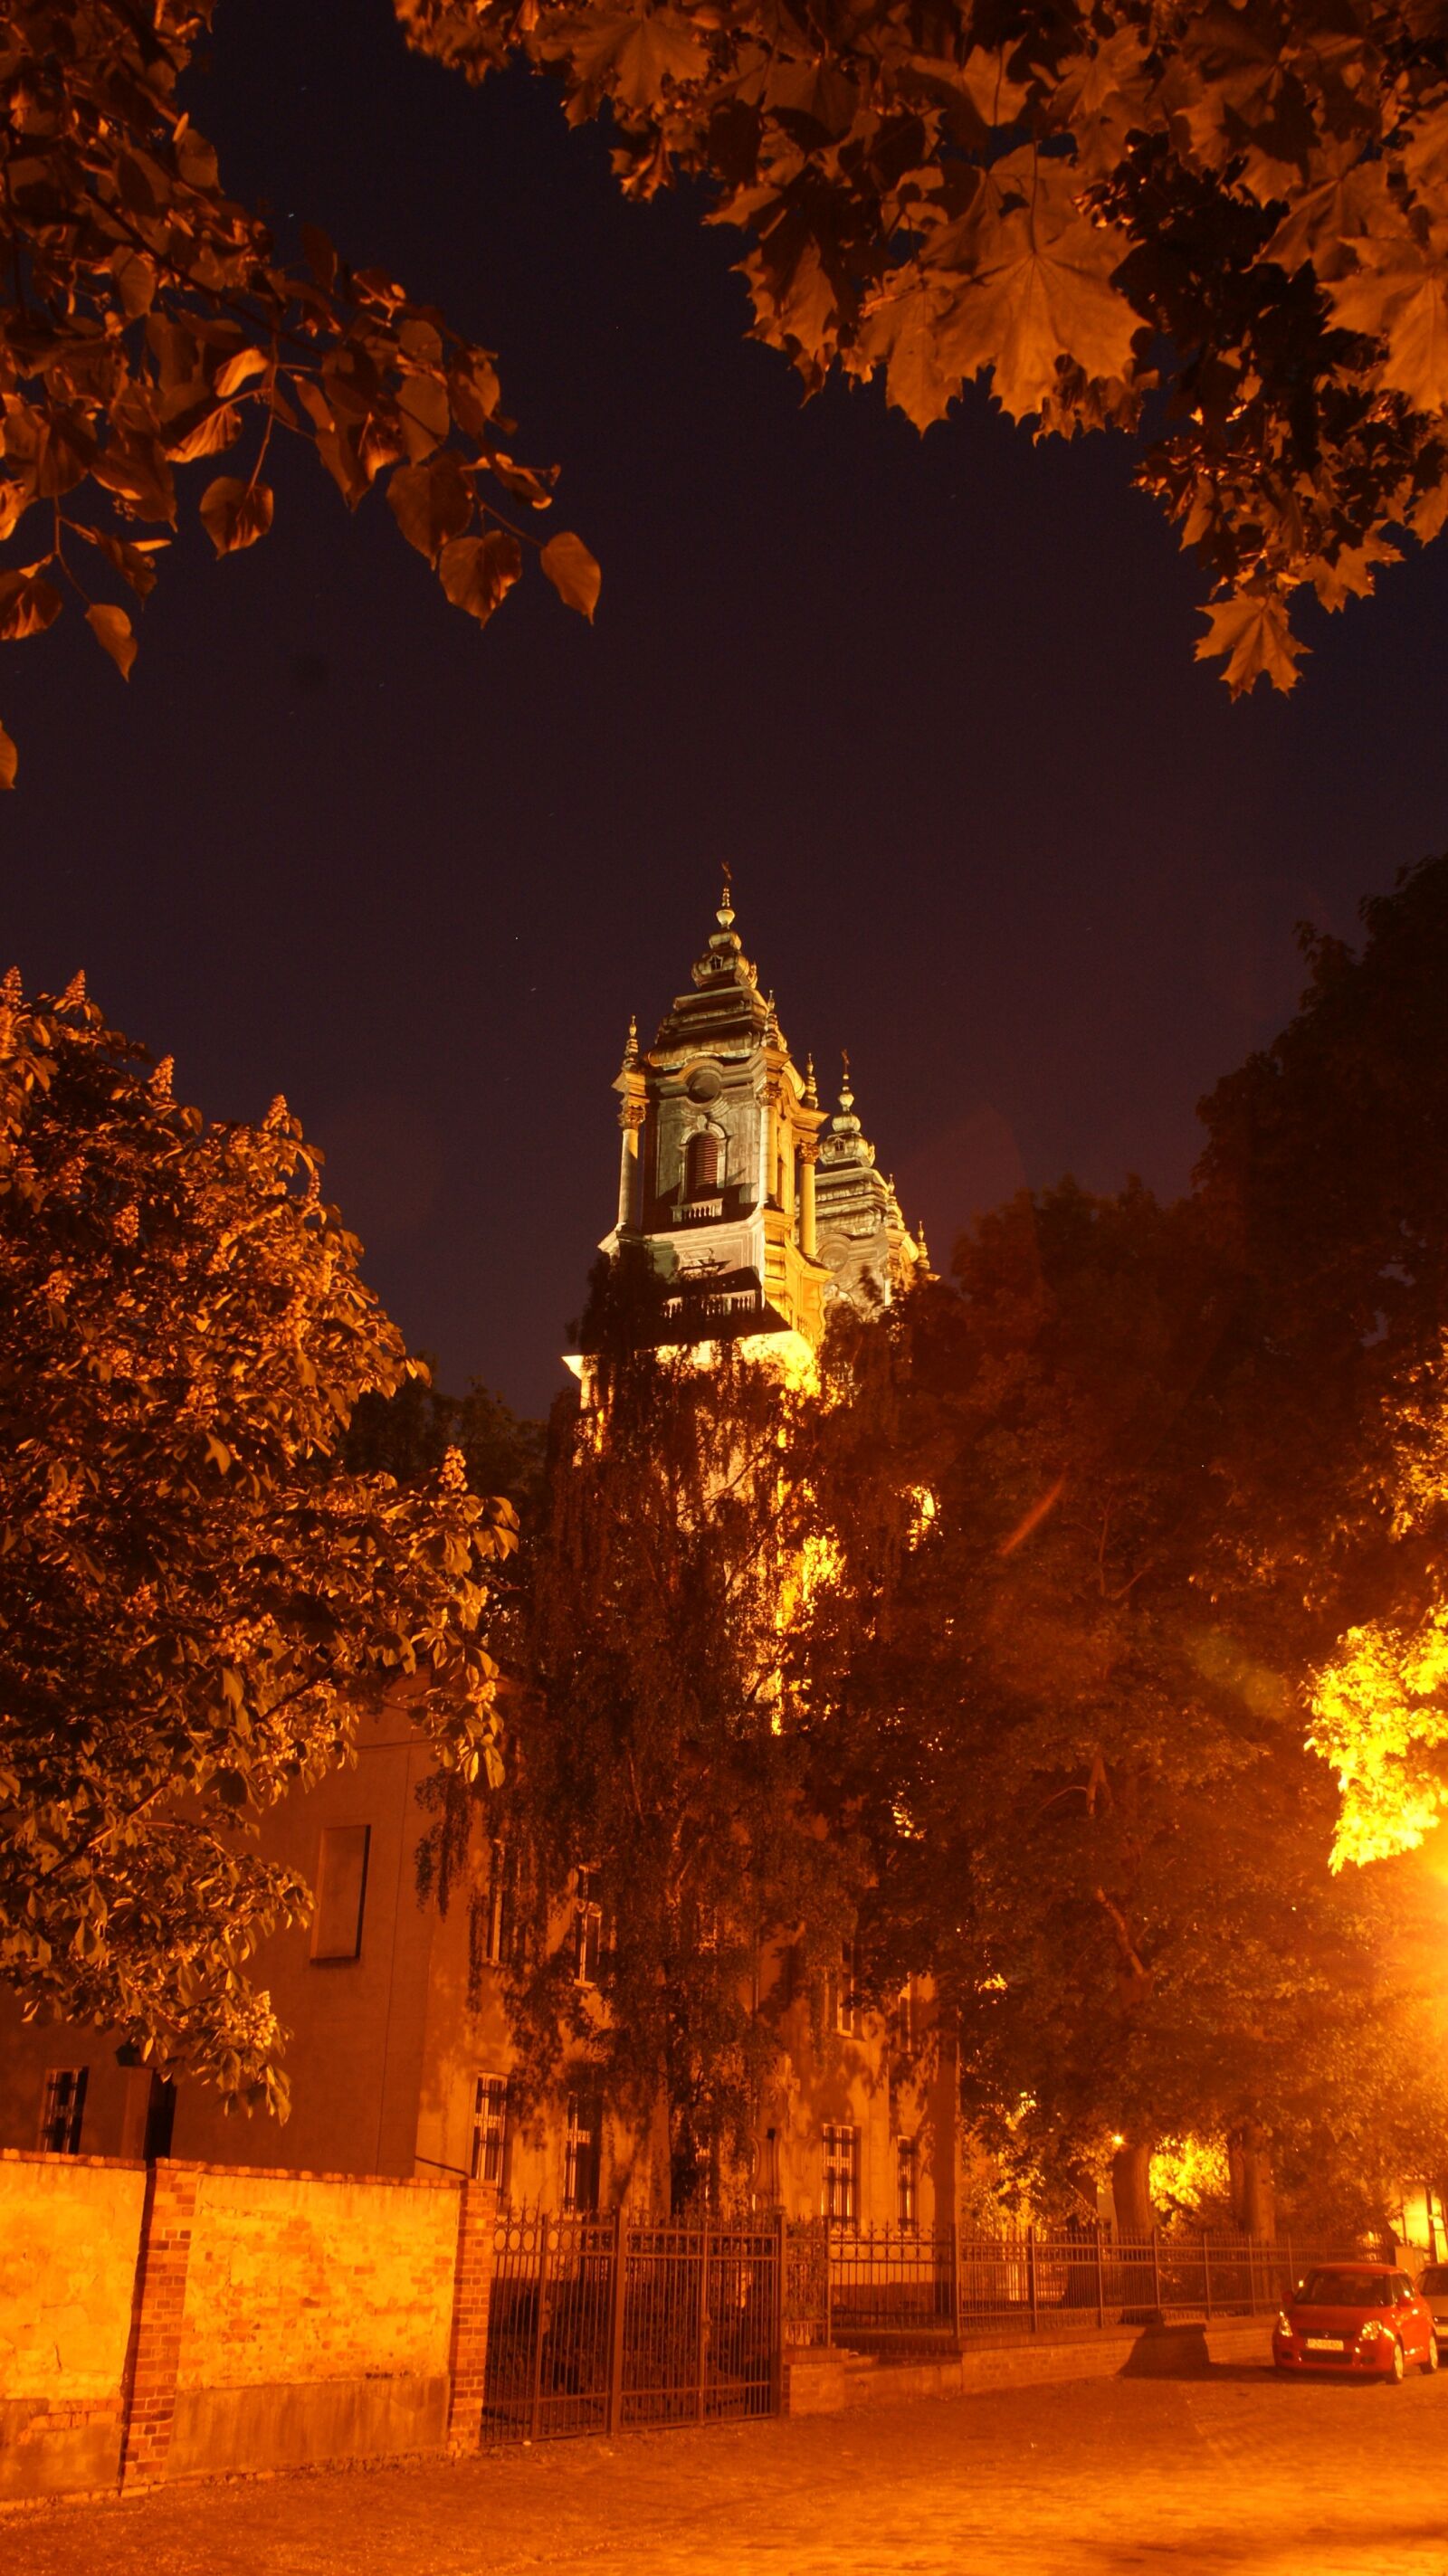 Sony Alpha DSLR-A200 sample photo. Autumn, night, church photography